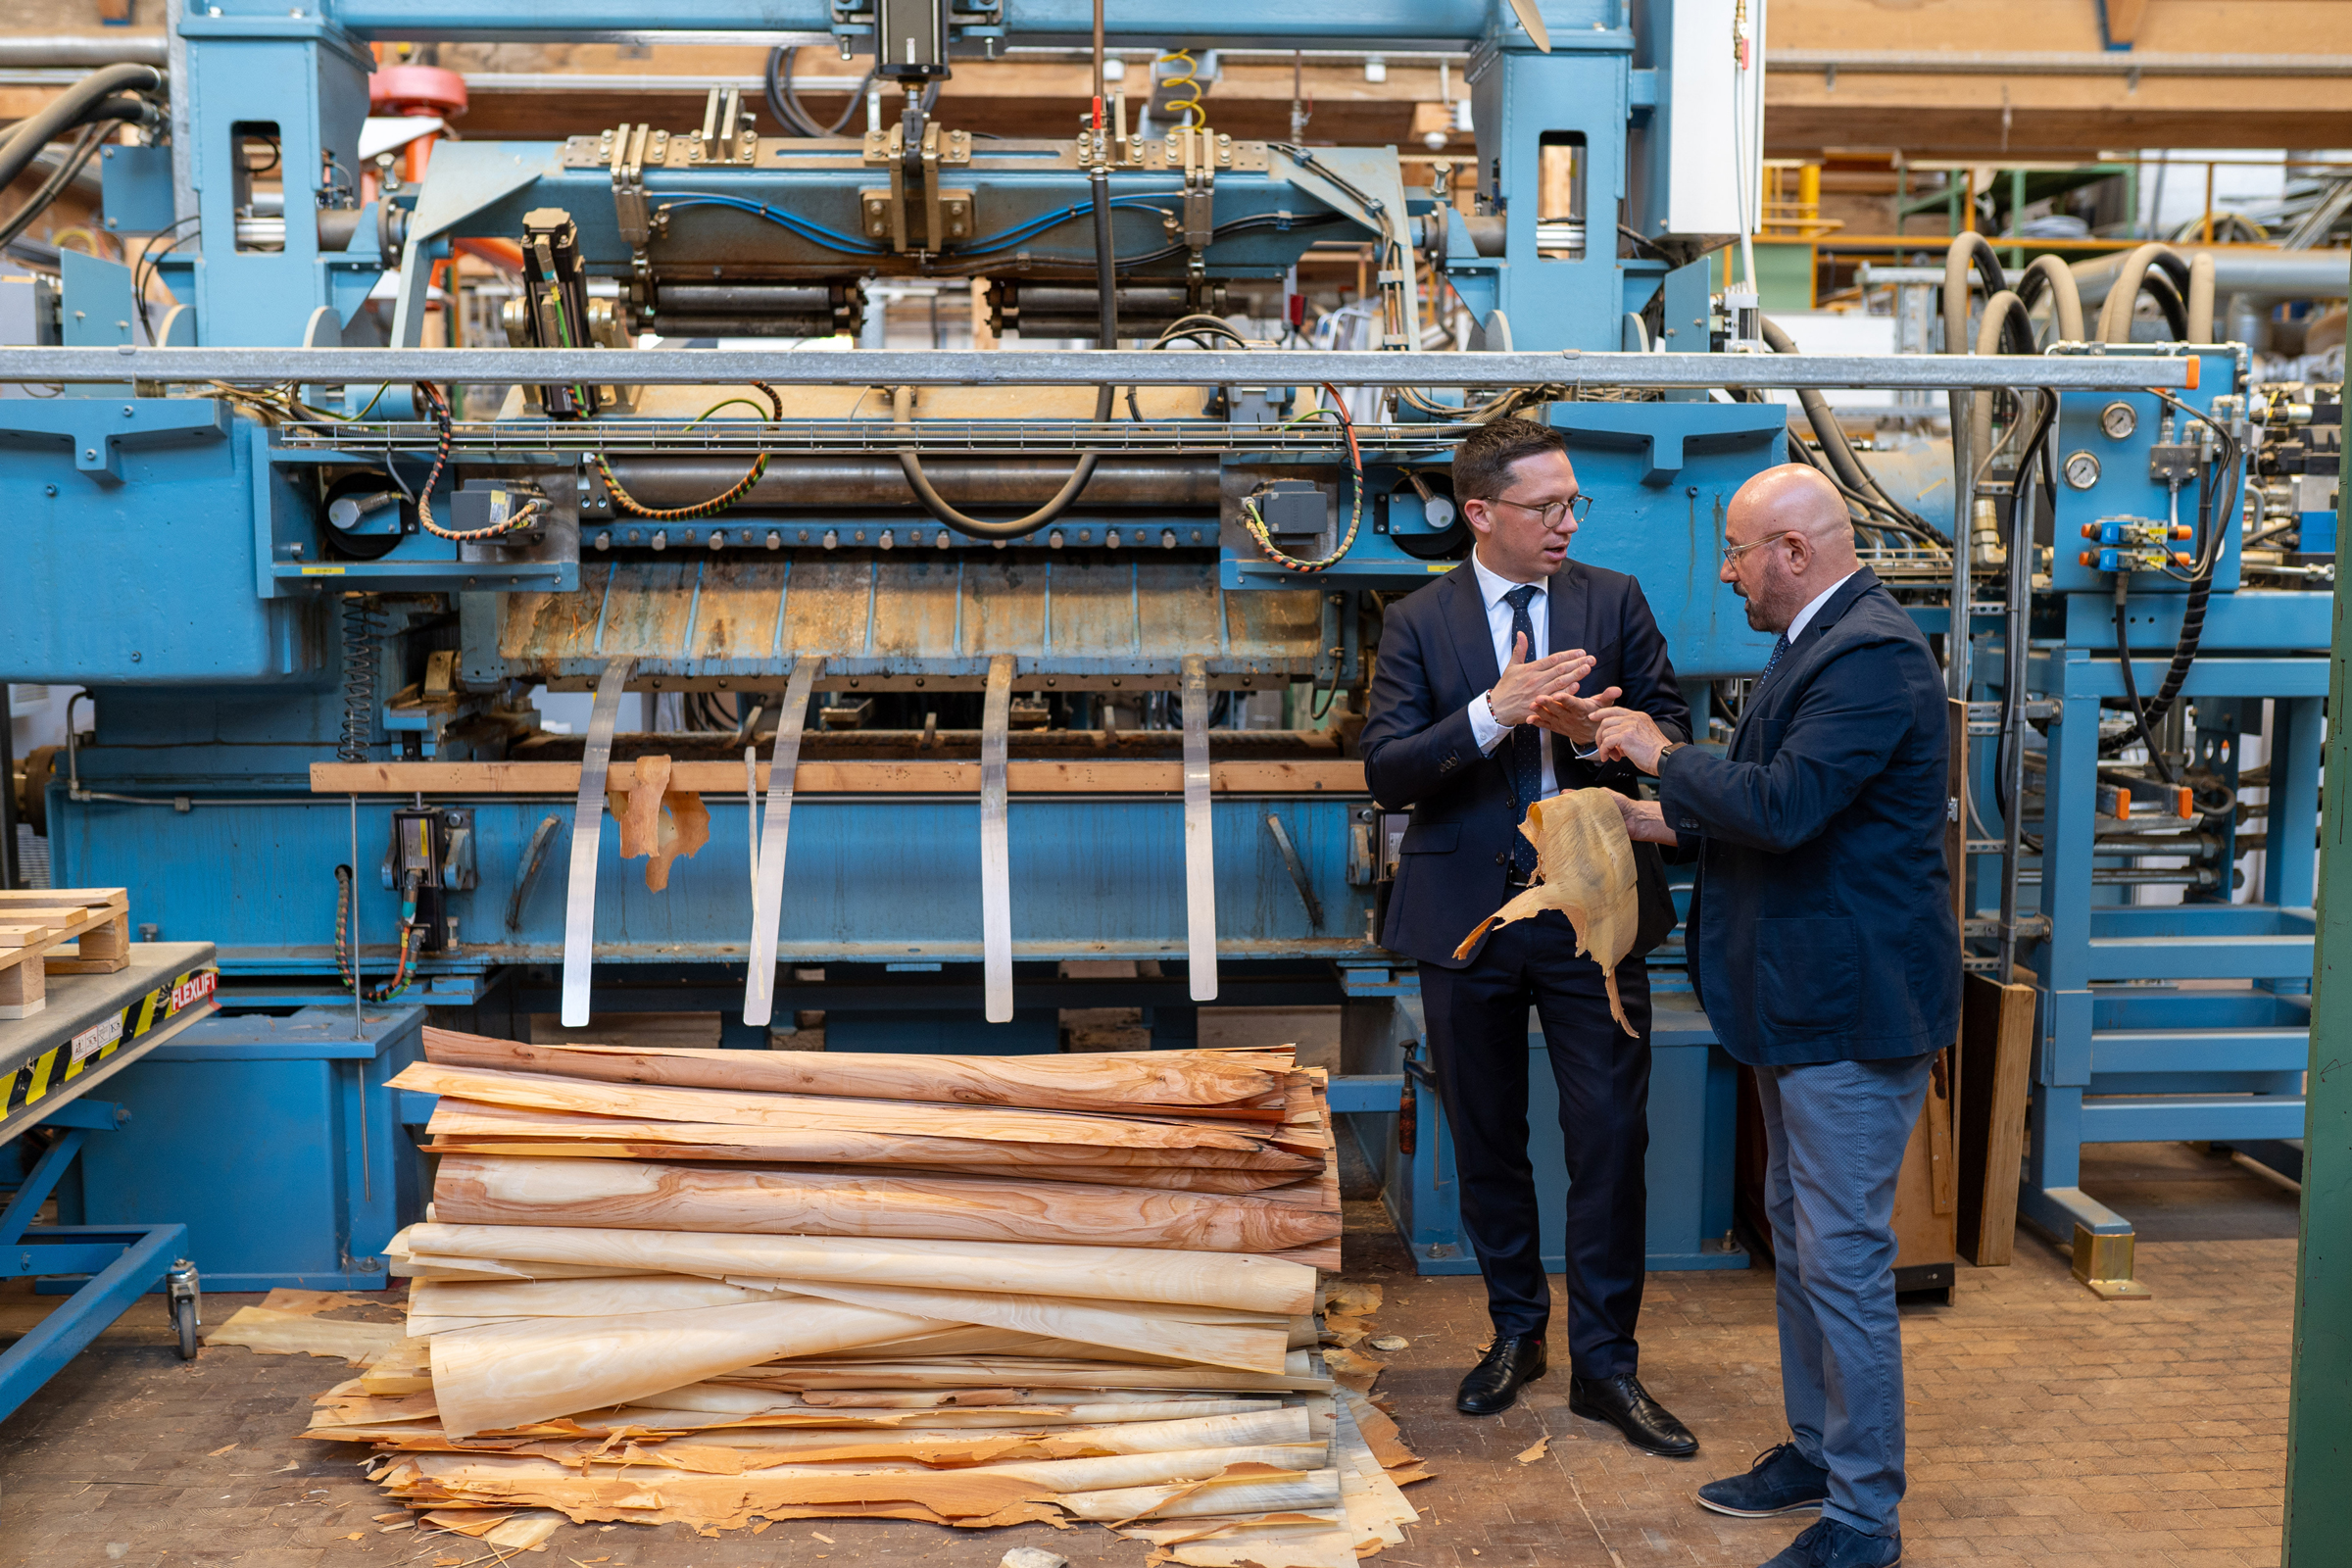 Das Foto zeigt Minister Falko Mohrs und Institutsleiter Professor Kasal vor einer großen technischen Anlage, auf der gerade Holzfurnier hergestellt wird.